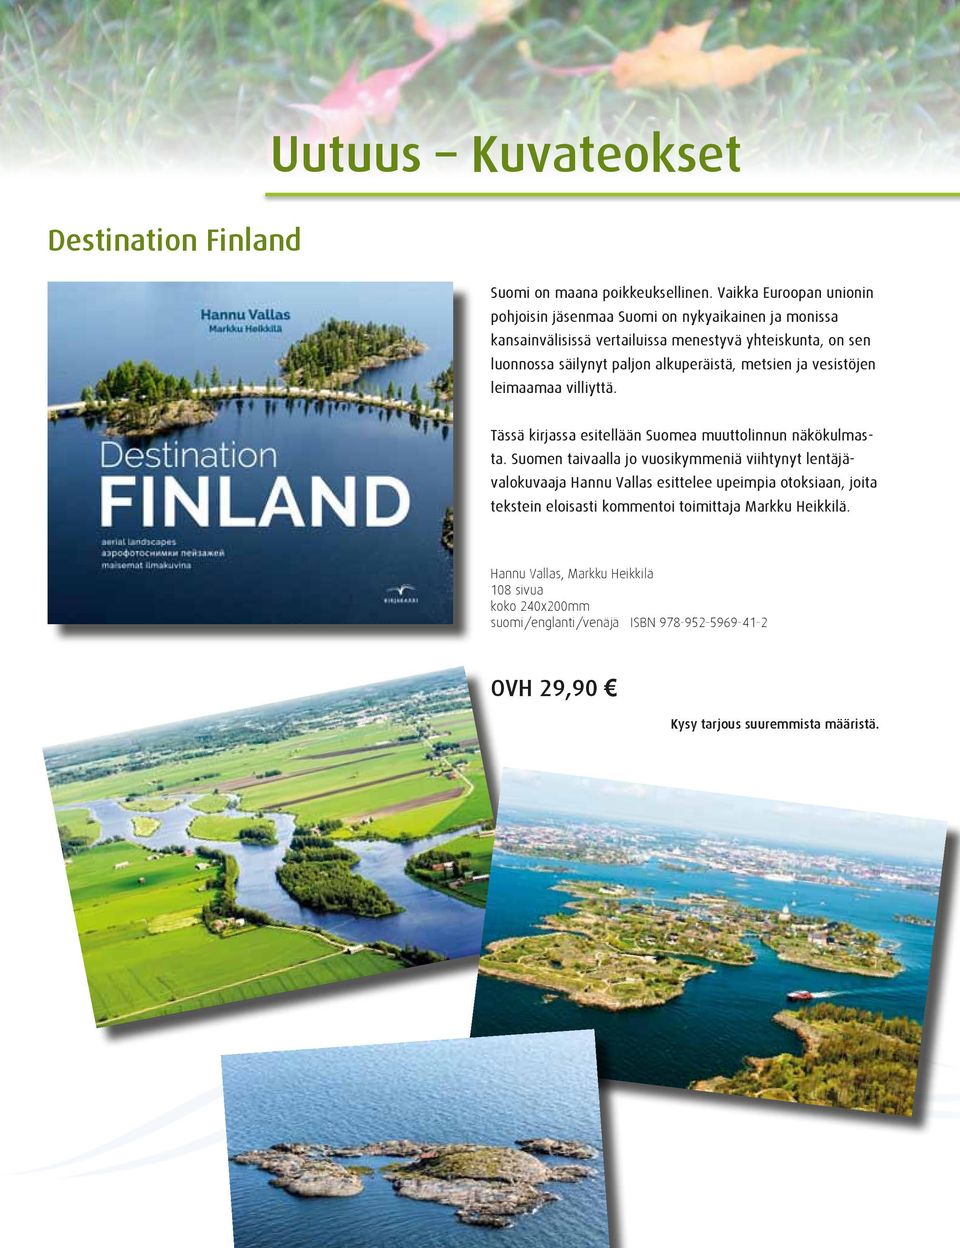 paljon alkuperäistä, metsien ja vesistöjen leimaamaa villiyttä. Tässä kirjassa esitellään Suomea muuttolinnun näkökulmasta.